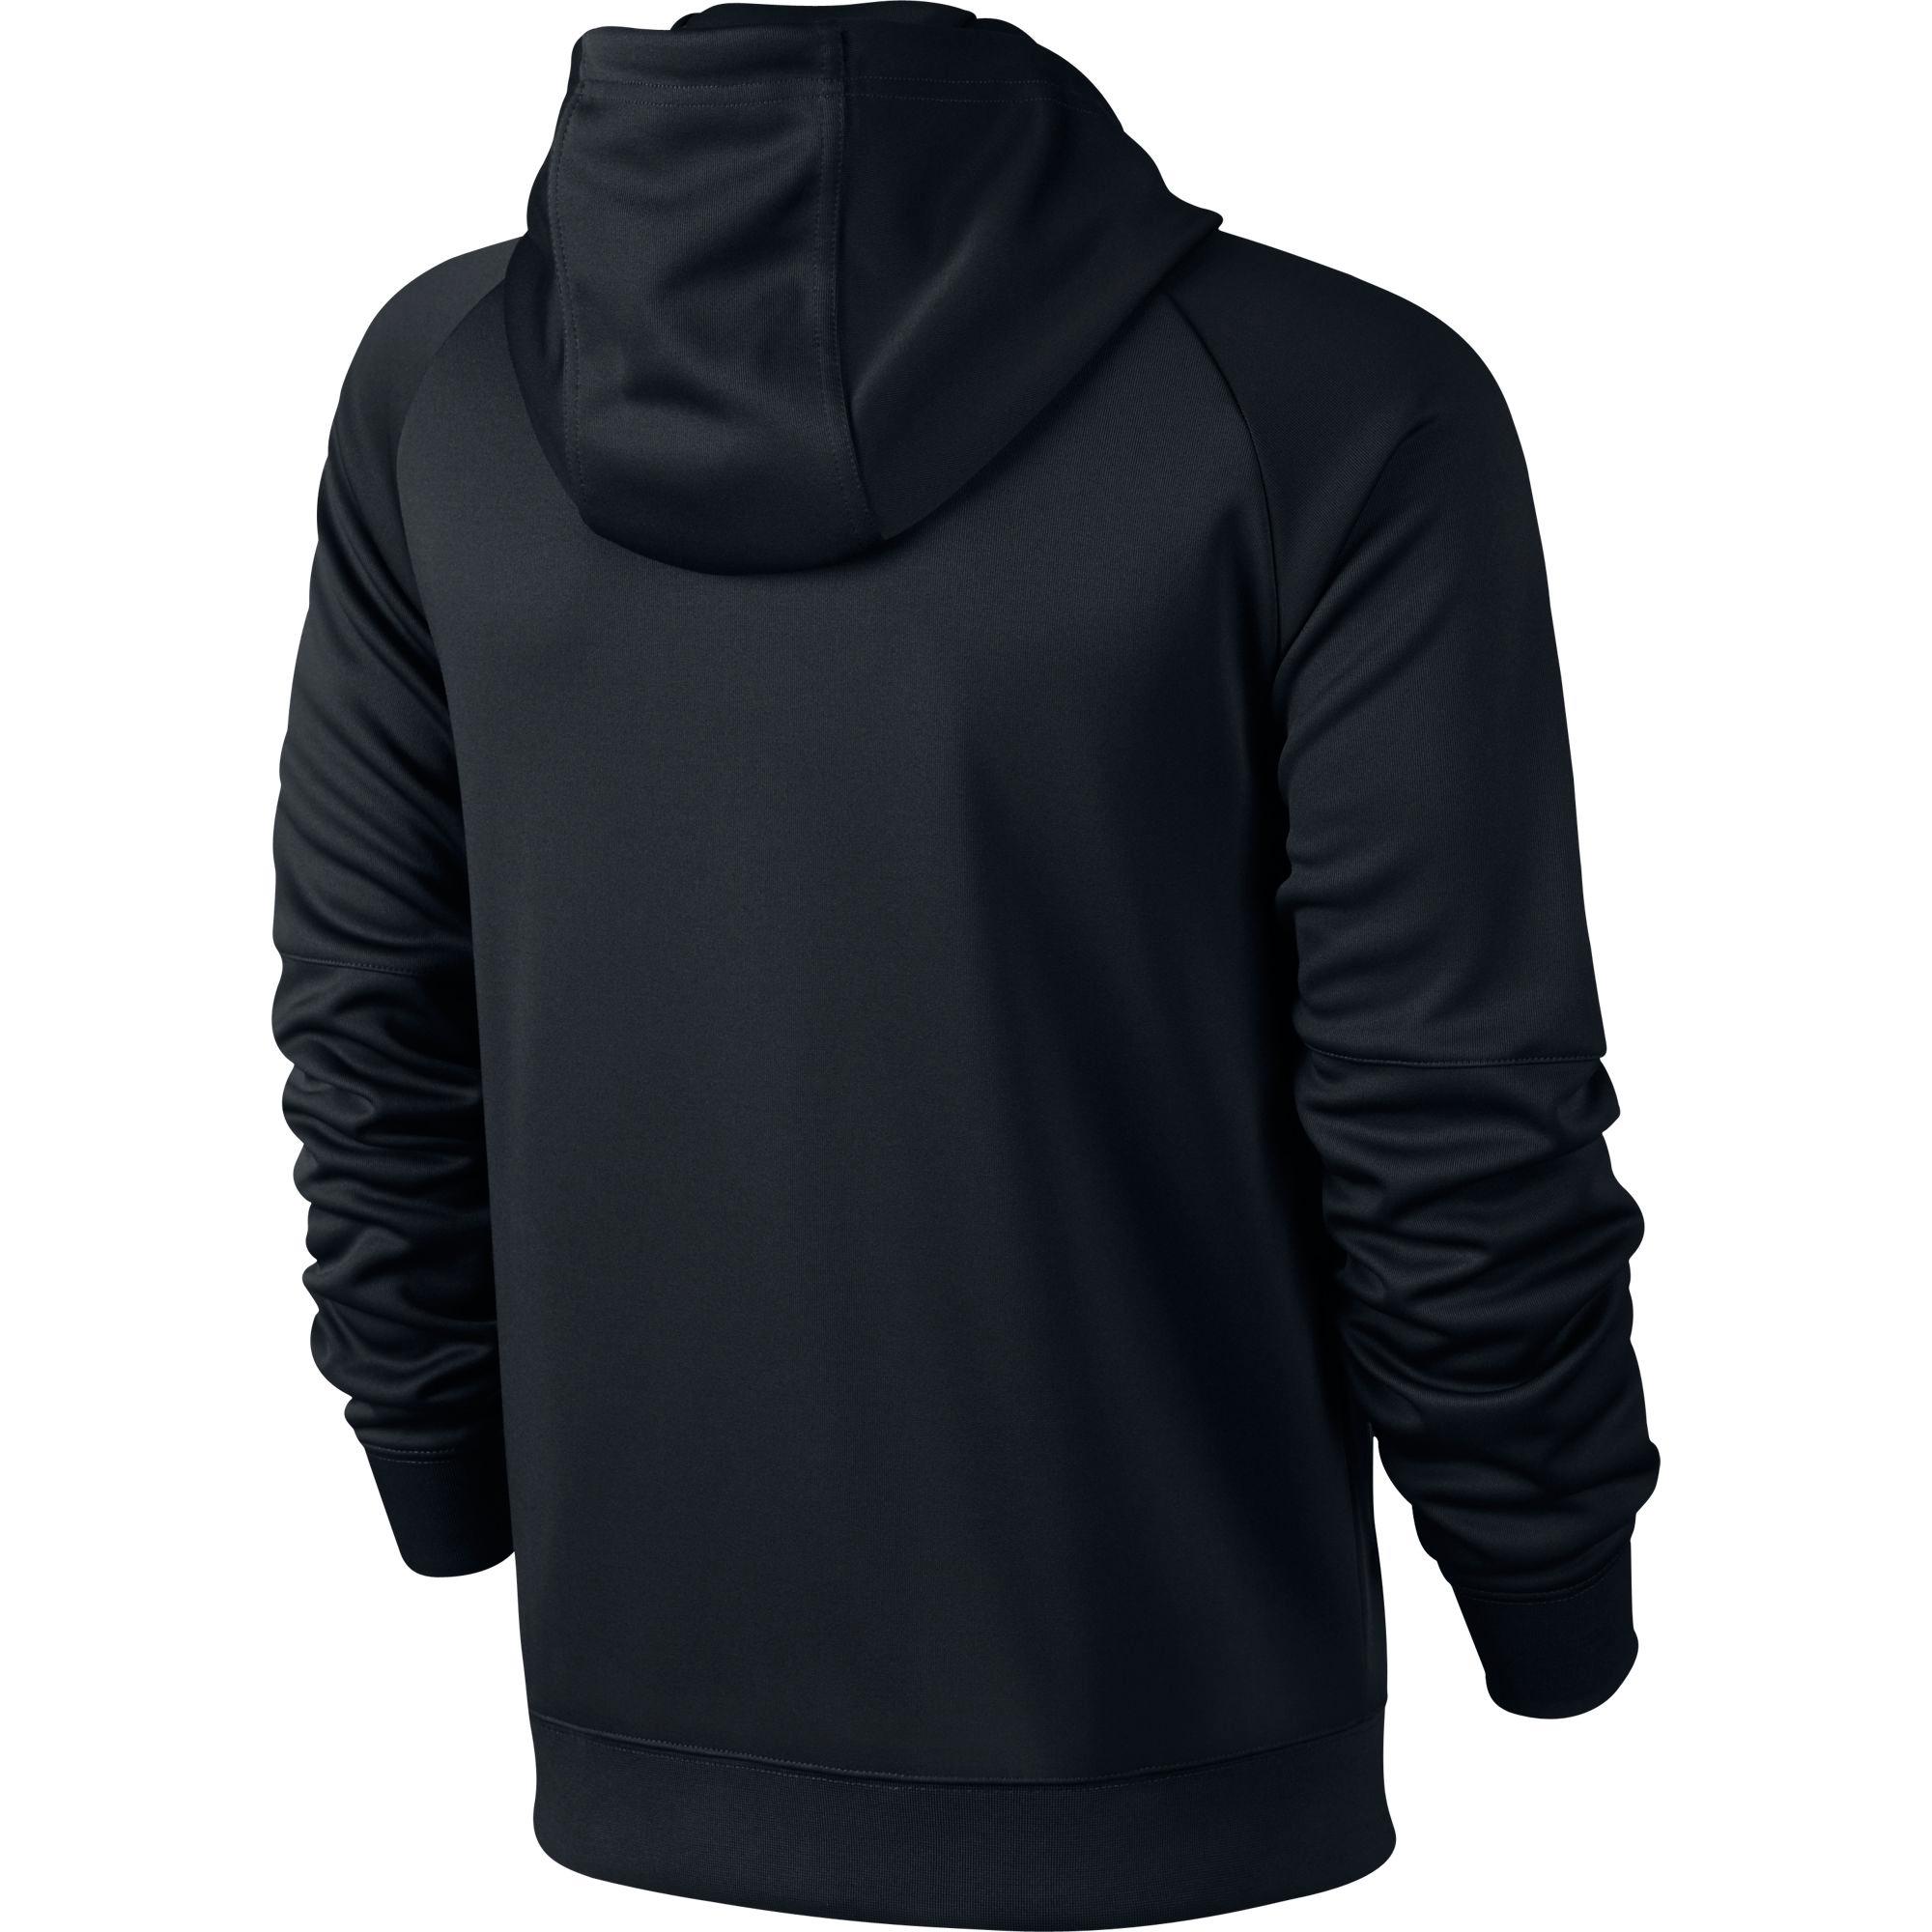 Nike Mens Sportswear Jacket - Black - Tennisnuts.com